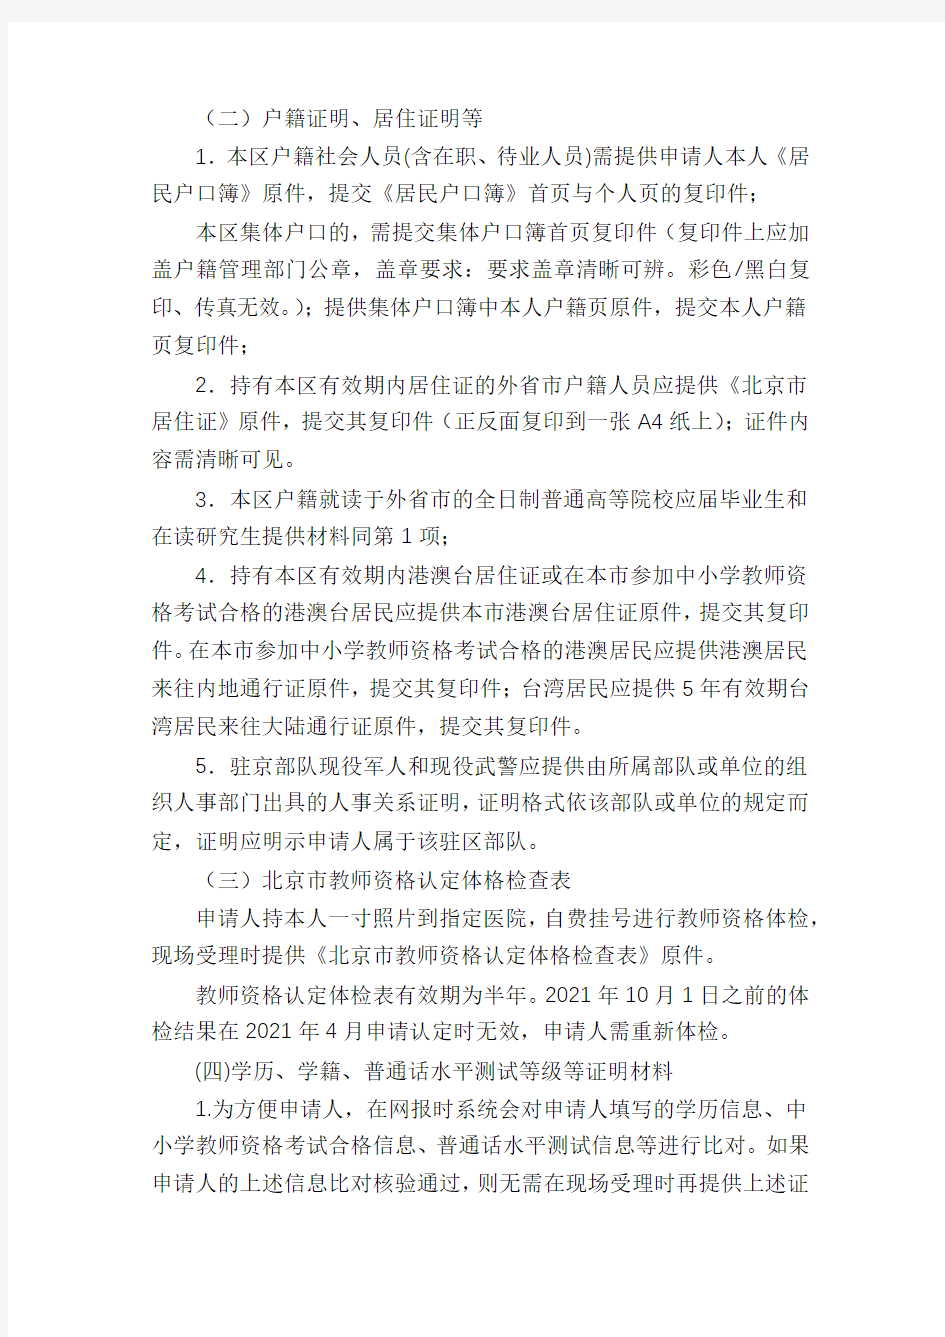 2021春季北京门头沟区第一次中小学教师资格认定现场受理及补办换发教师资格证工作安排